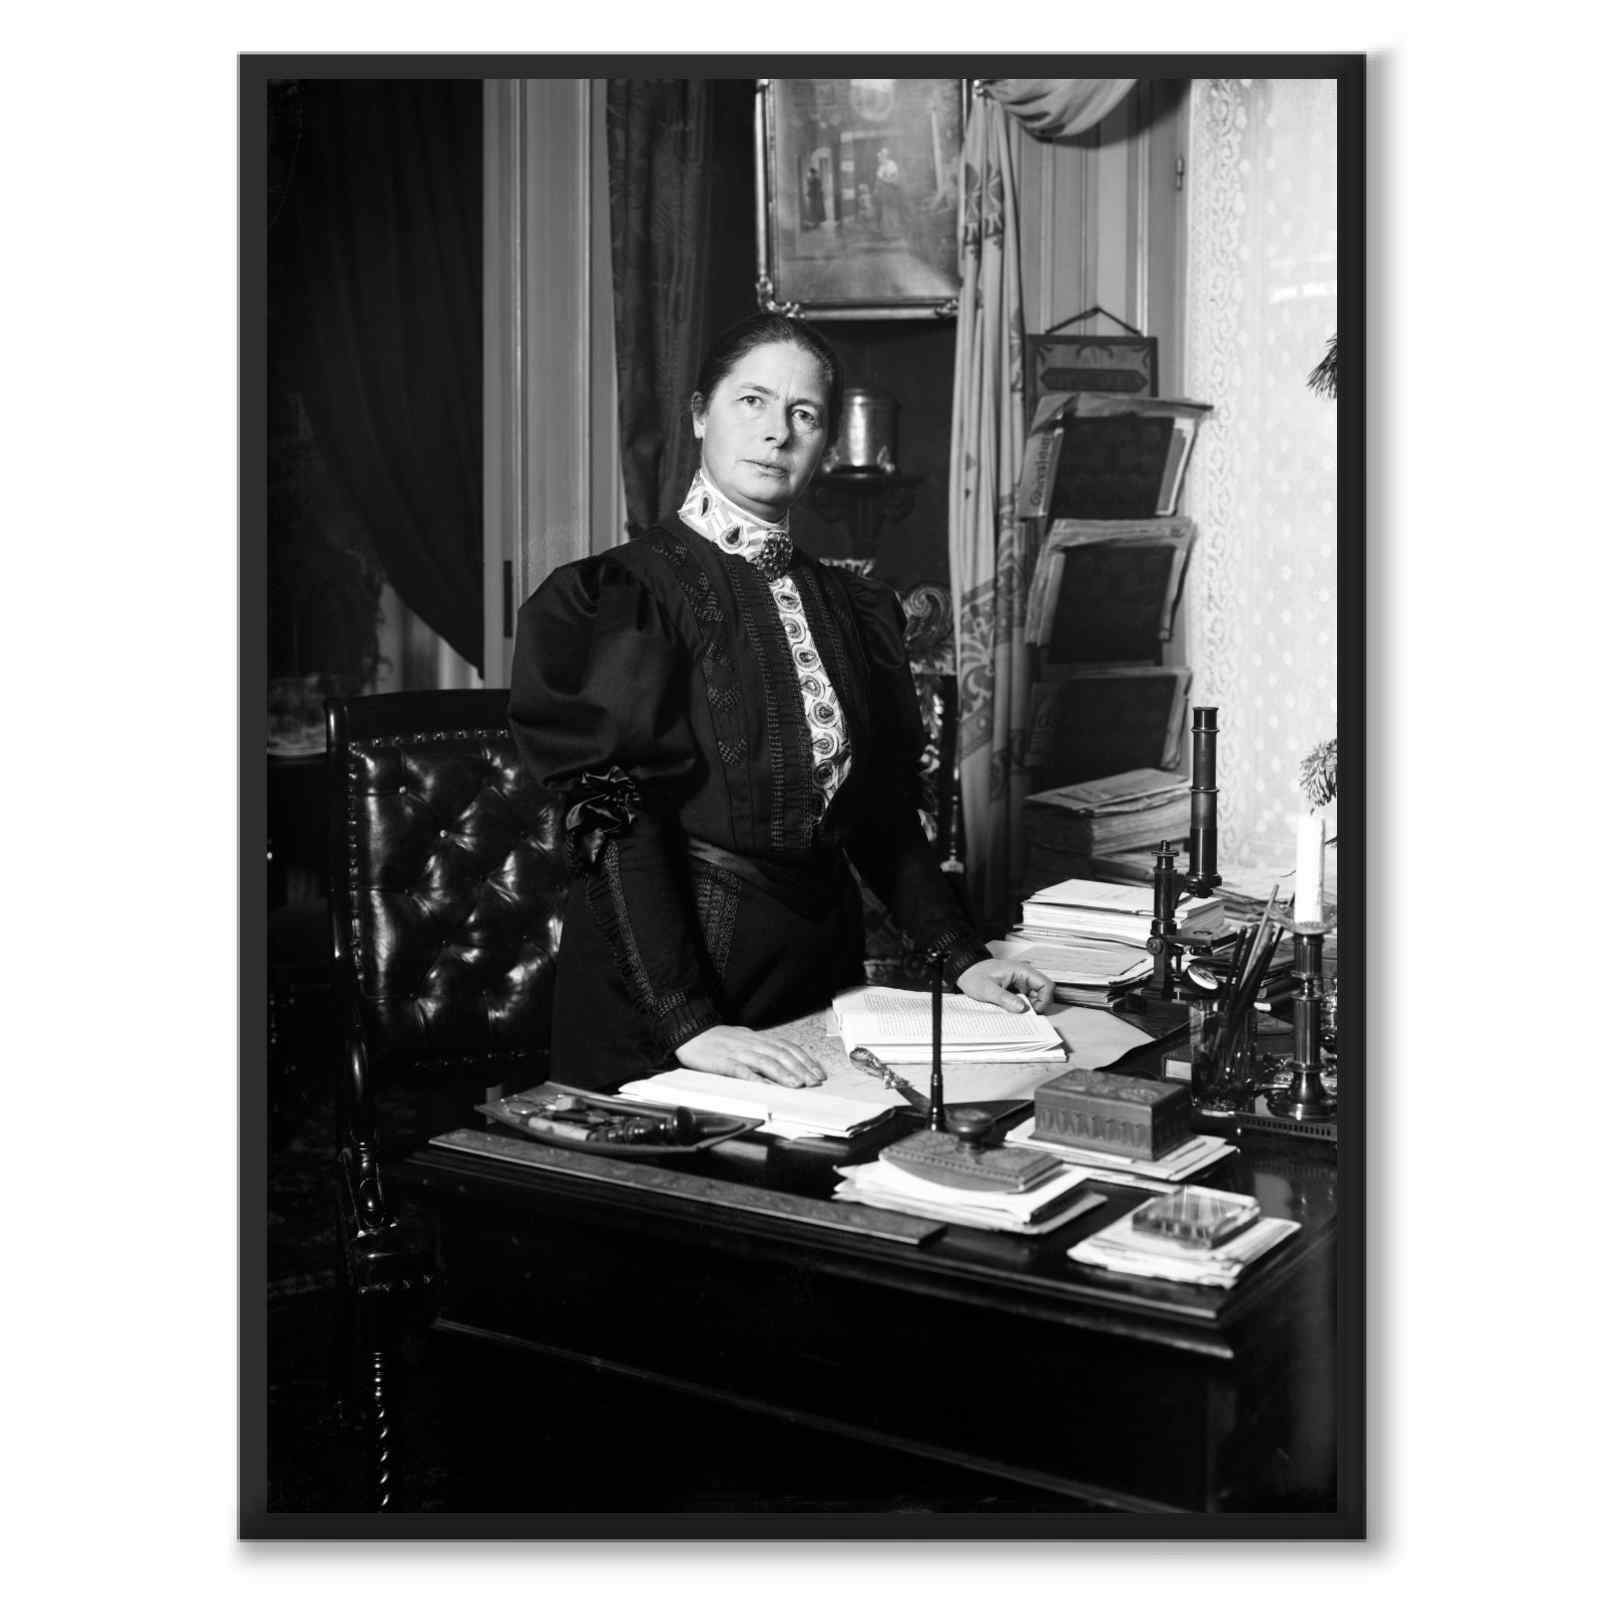 Första kvinnliga läkaren i Sverige